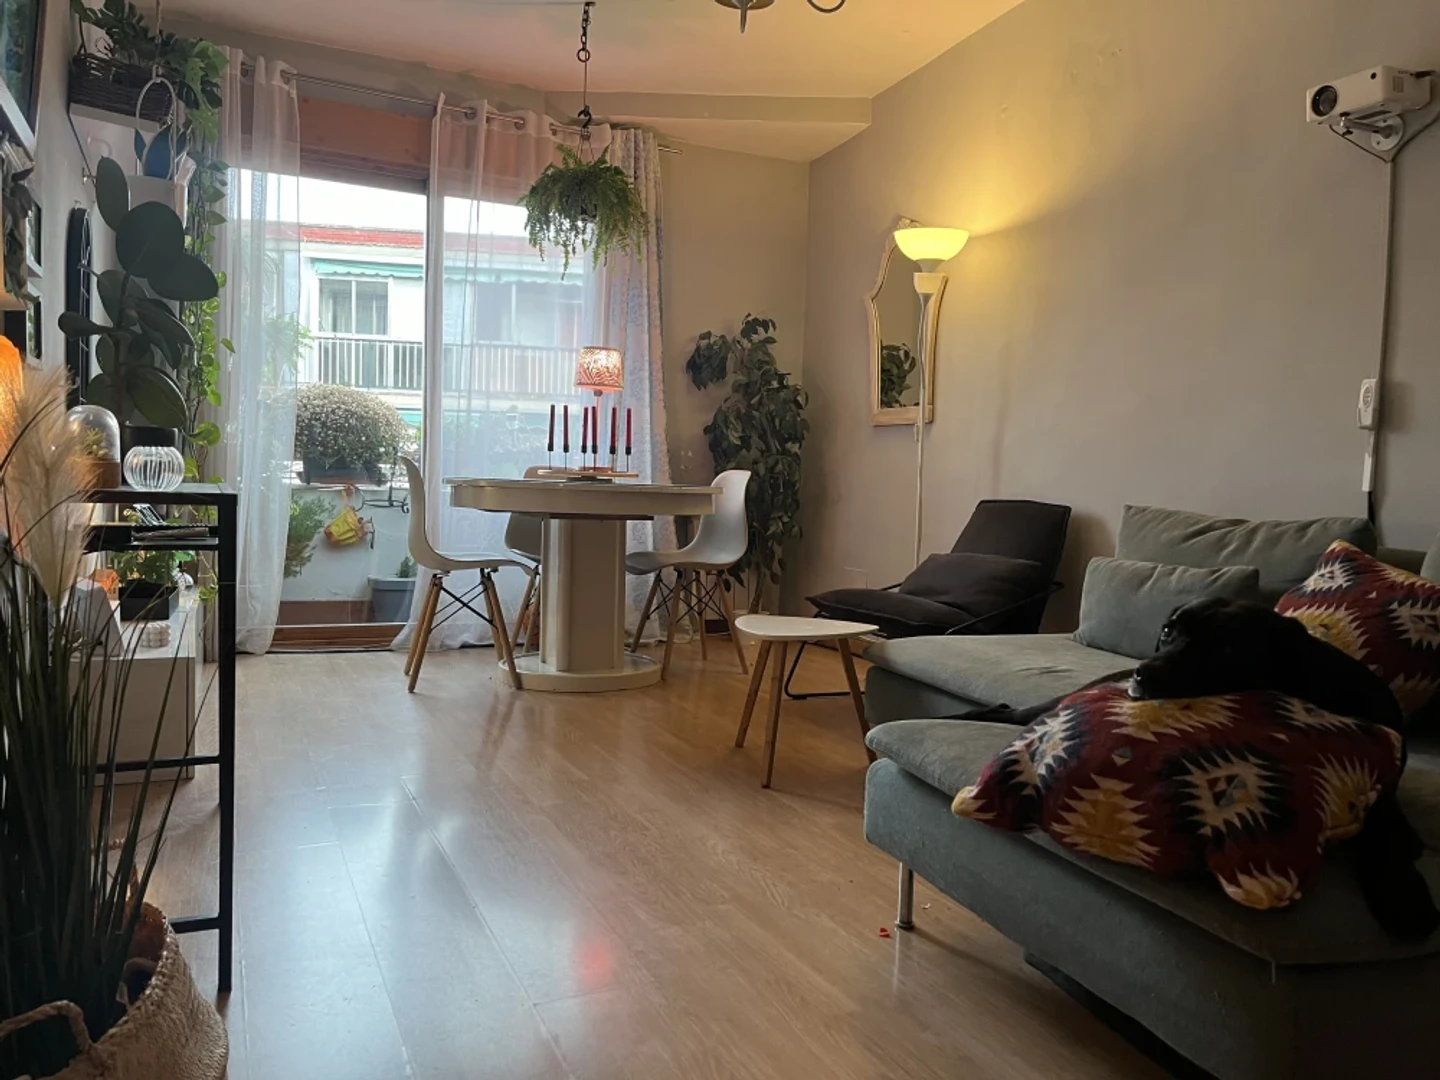 Alquiler de habitaciones por meses en Leganés